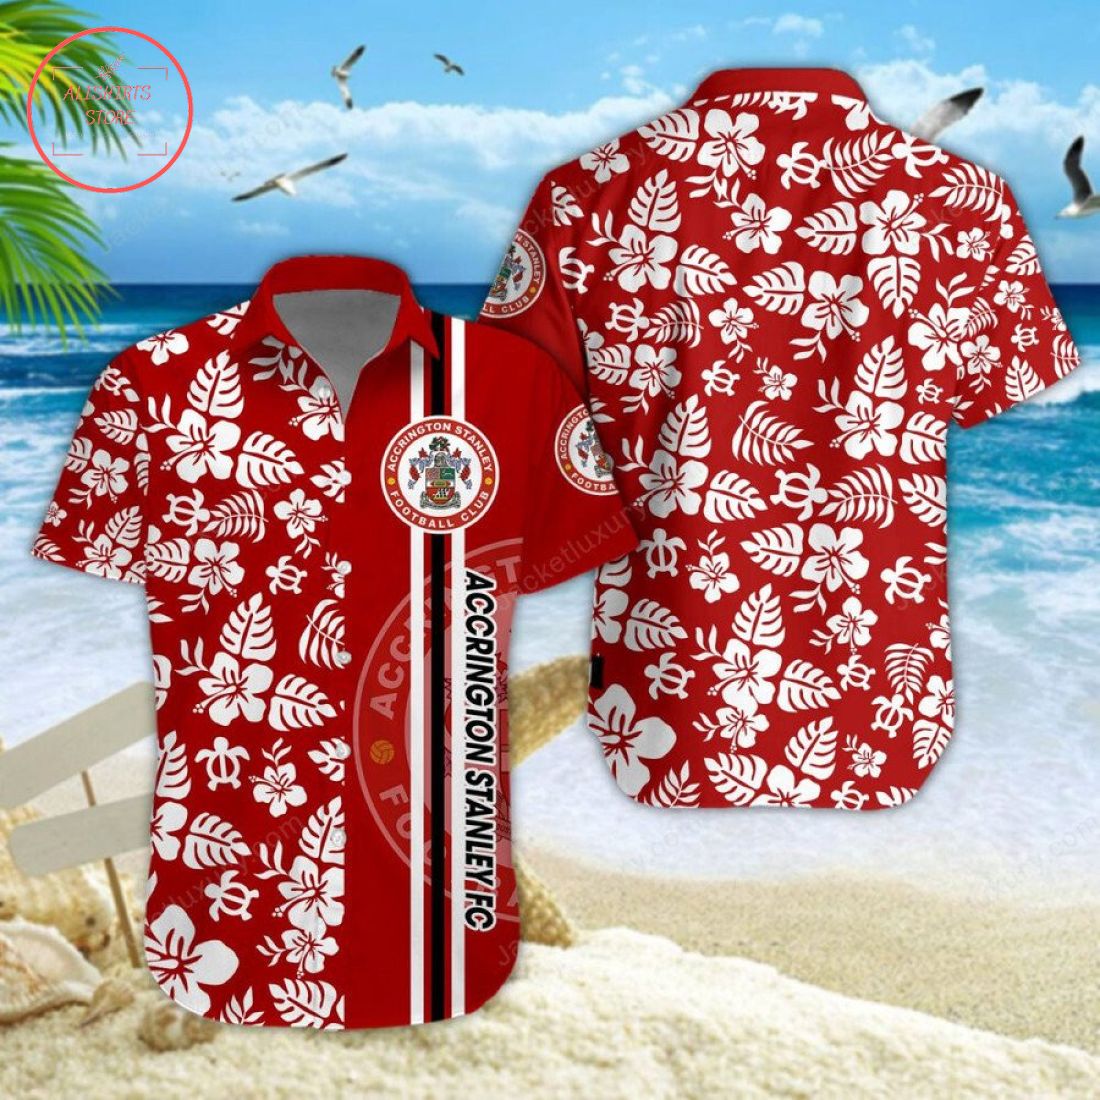 Accrington Stanley FC Aloha Hawaiian Shirt and Beach Shorts